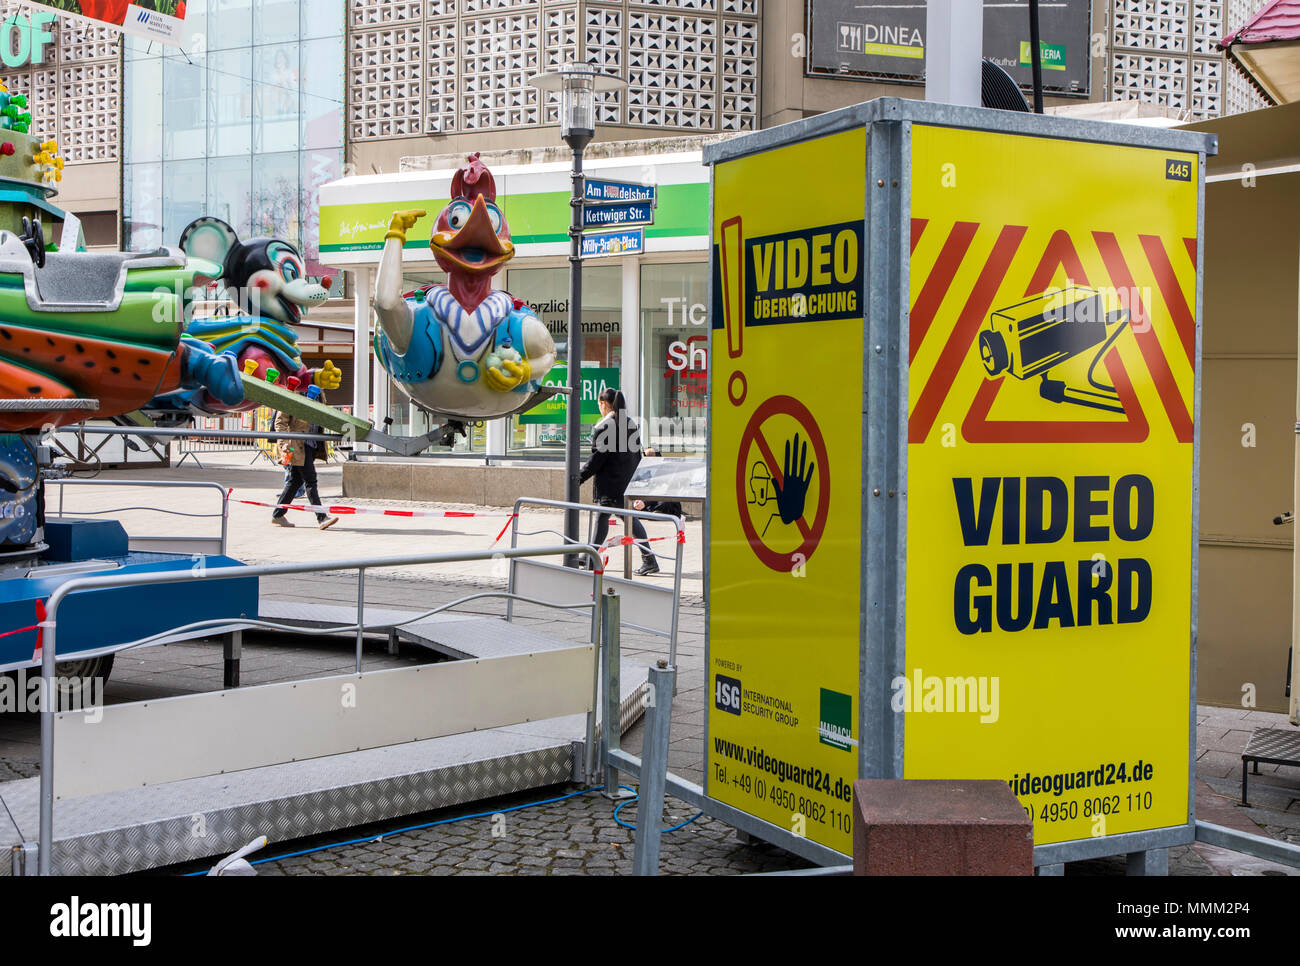 Video Guard, mobile Kameraüberwachung, für Baustellen, Lagerbereiche, Industrieanlagen, Events, wie hier eine Stadt Festival in Esse Stockfoto